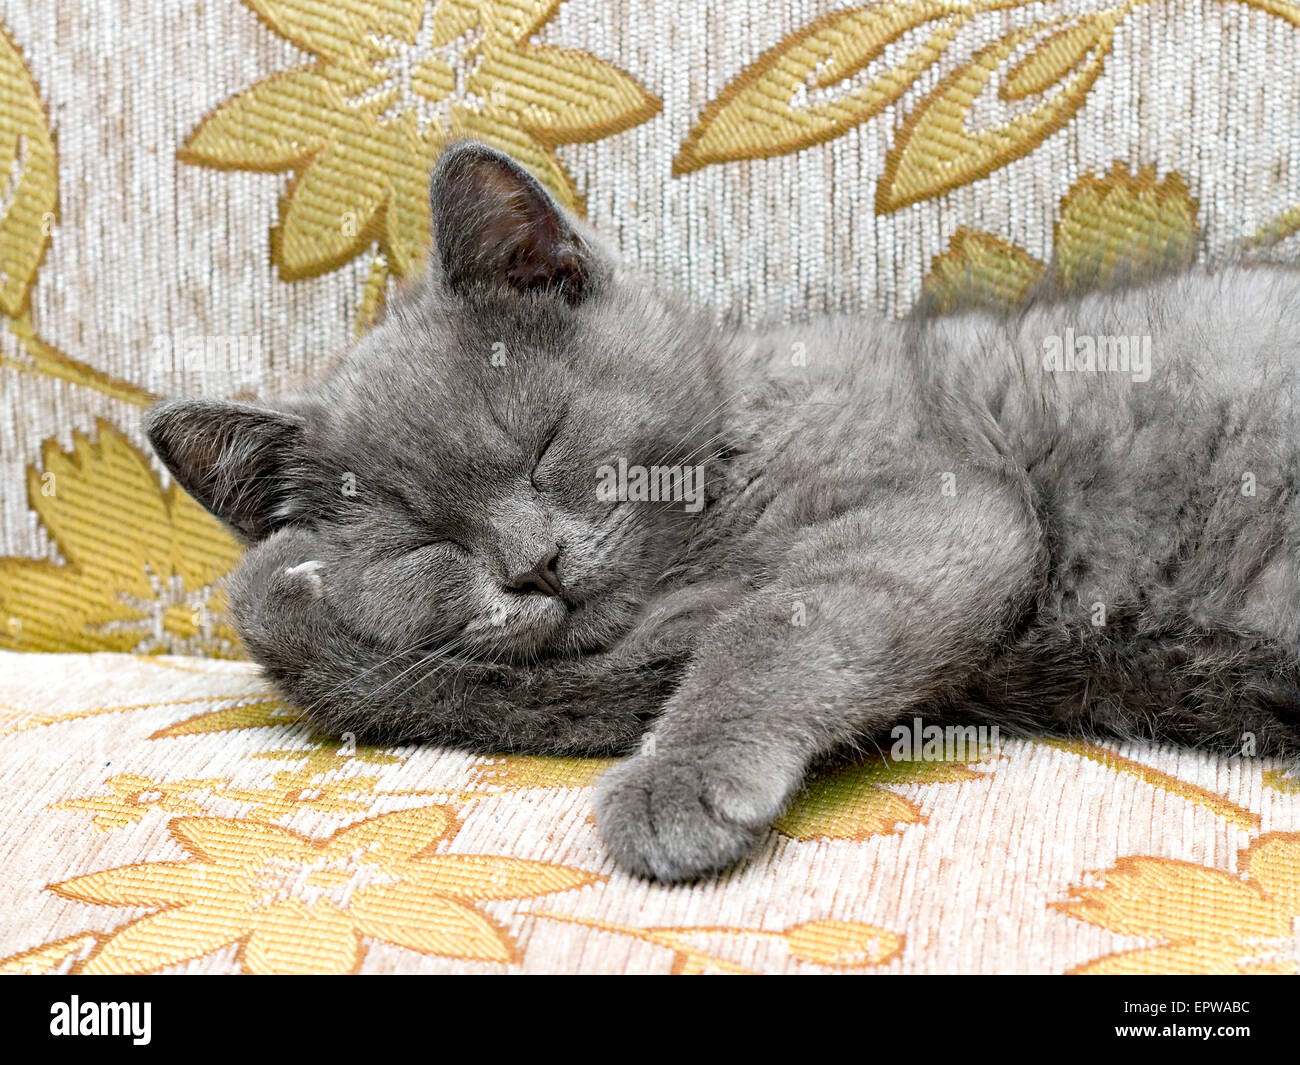 Britische Rasse Kätzchen rauchig-graue Farbe auf der couch Stockfoto